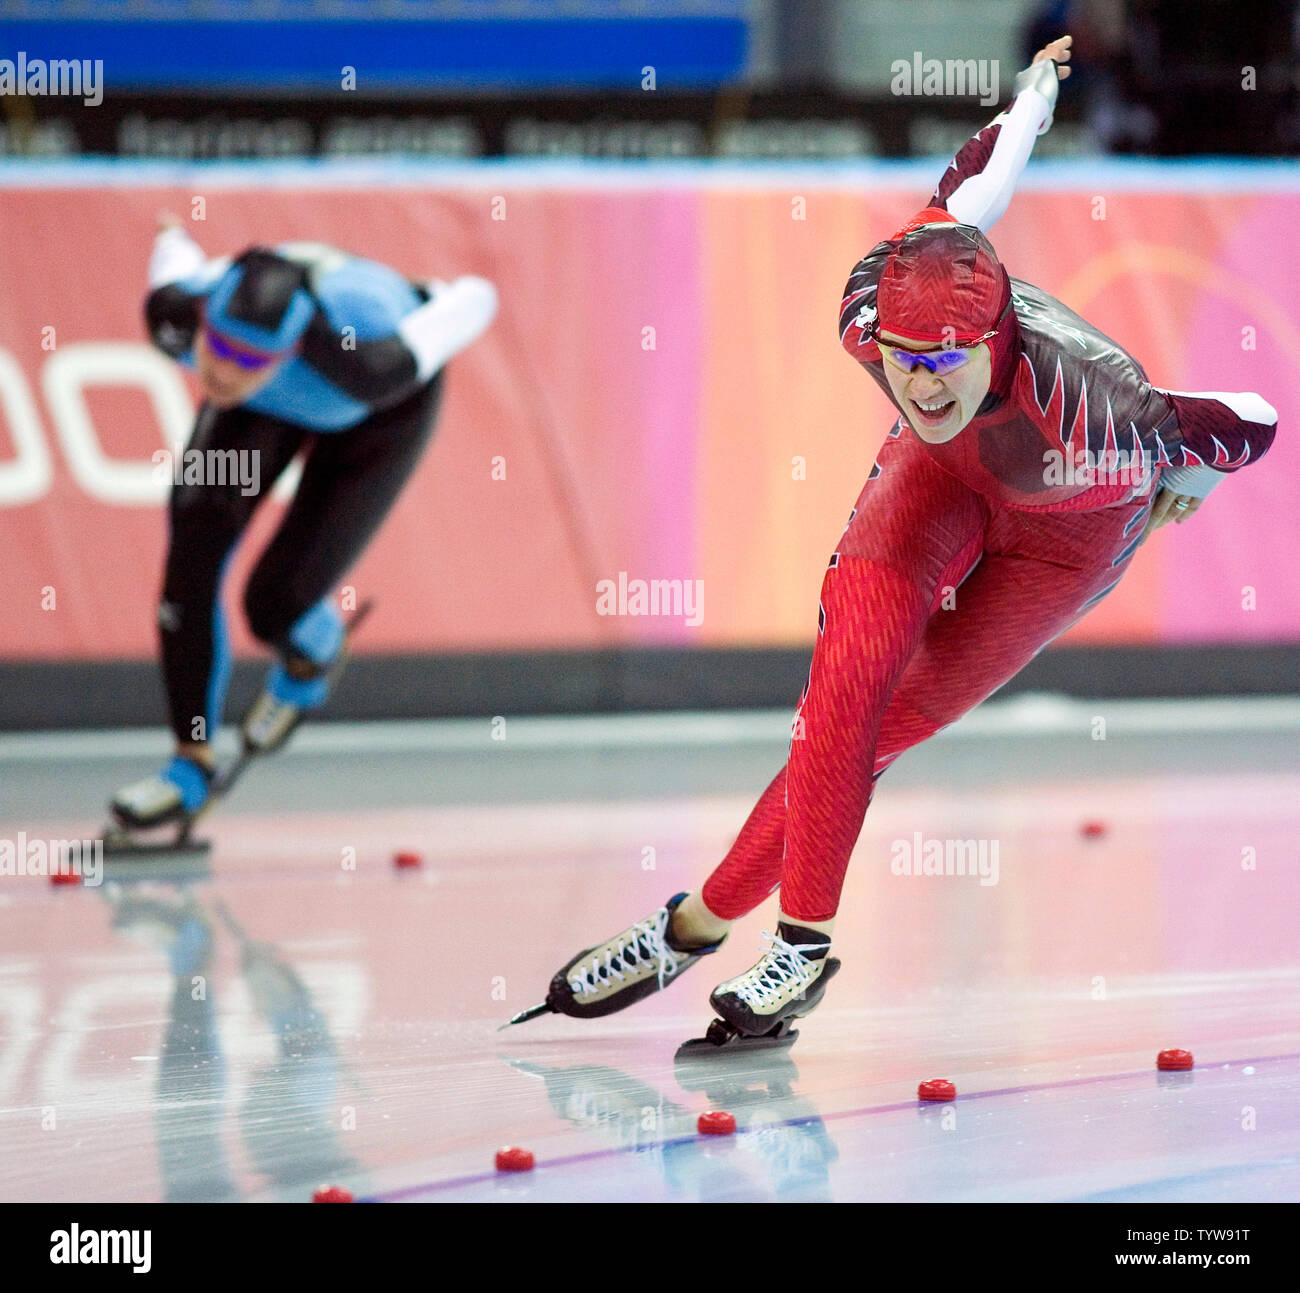 Clara Hughes du Canada bat Claudia Pechstein de l'Allemagne de gagner la médaille d'or en patinage de vitesse à 5000m dans l'Oval Lingotto 2006 Jeux Olympiques d'hiver de Turin, le 25 février 2006. Pechstein décroche l'argent. (Photo d'UPI/Heinz Ruckemann) Banque D'Images